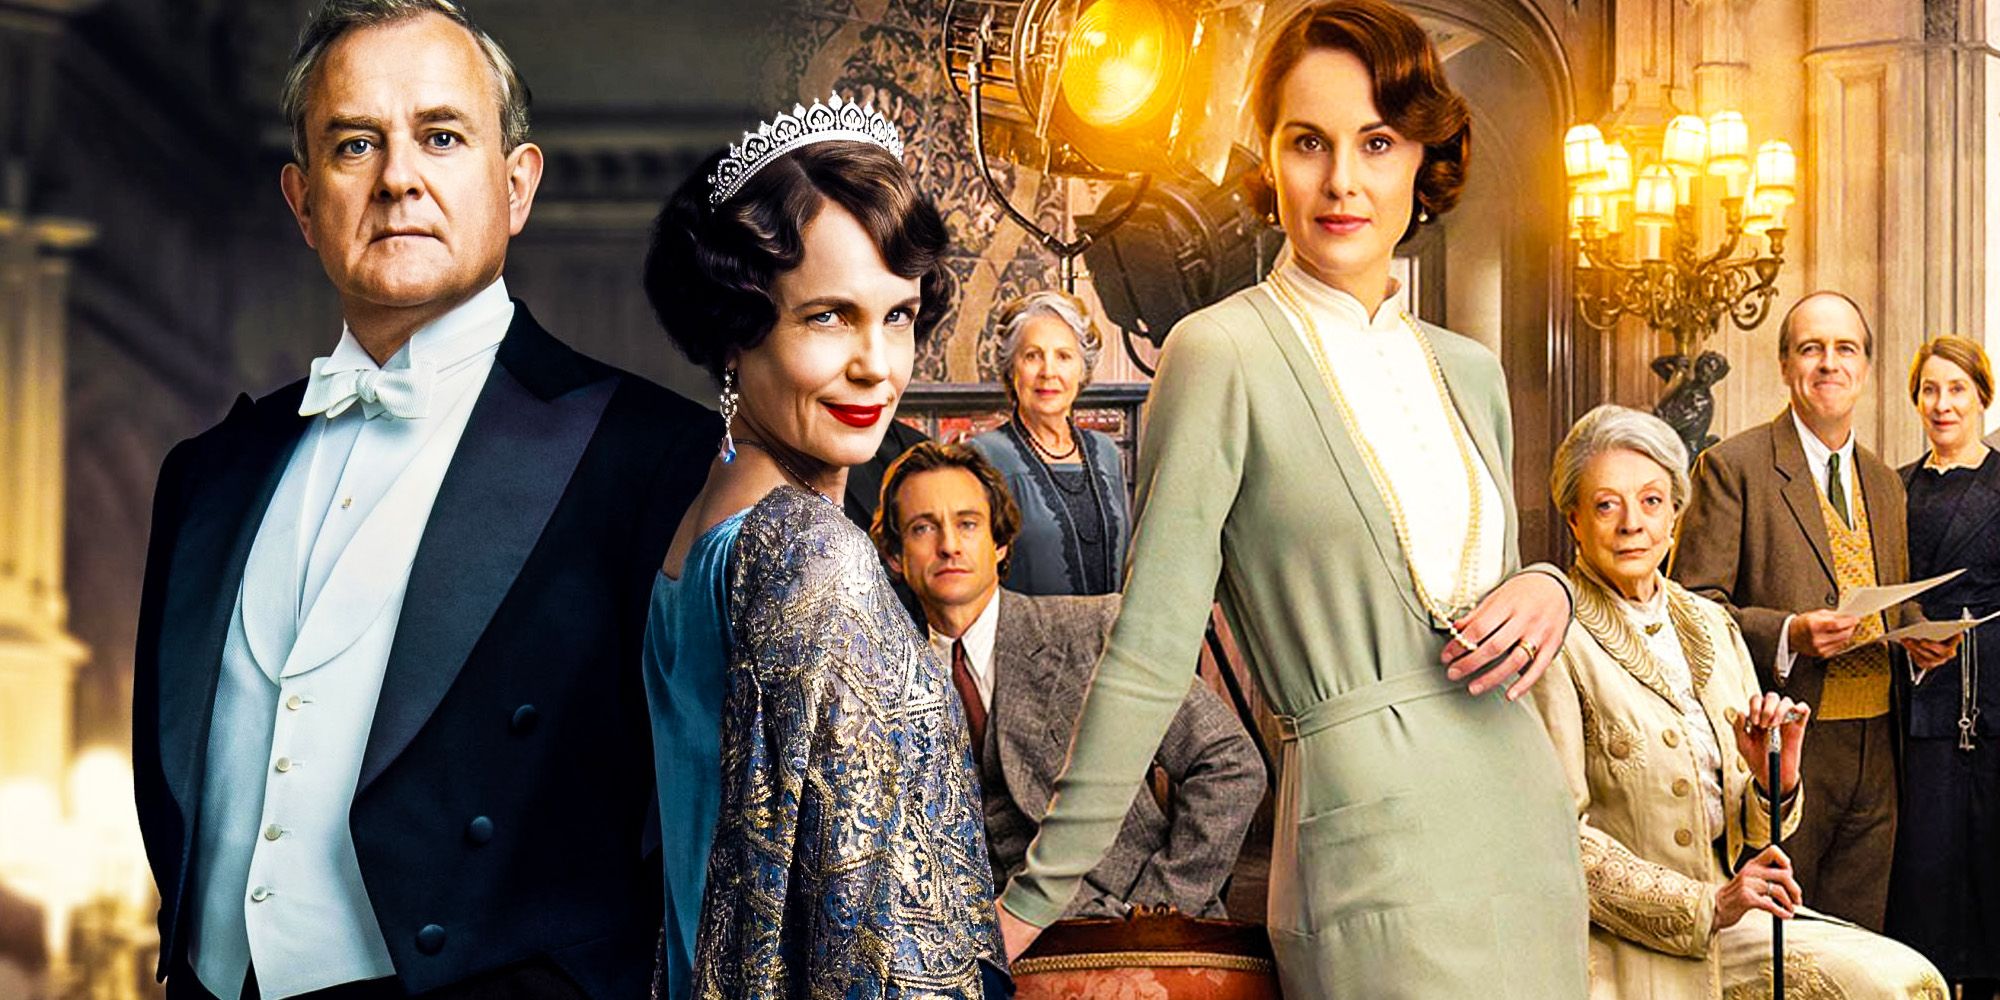 Por qué Downton Abbey 2 hizo menos que la película de 2019 (a pesar de ser mejor)